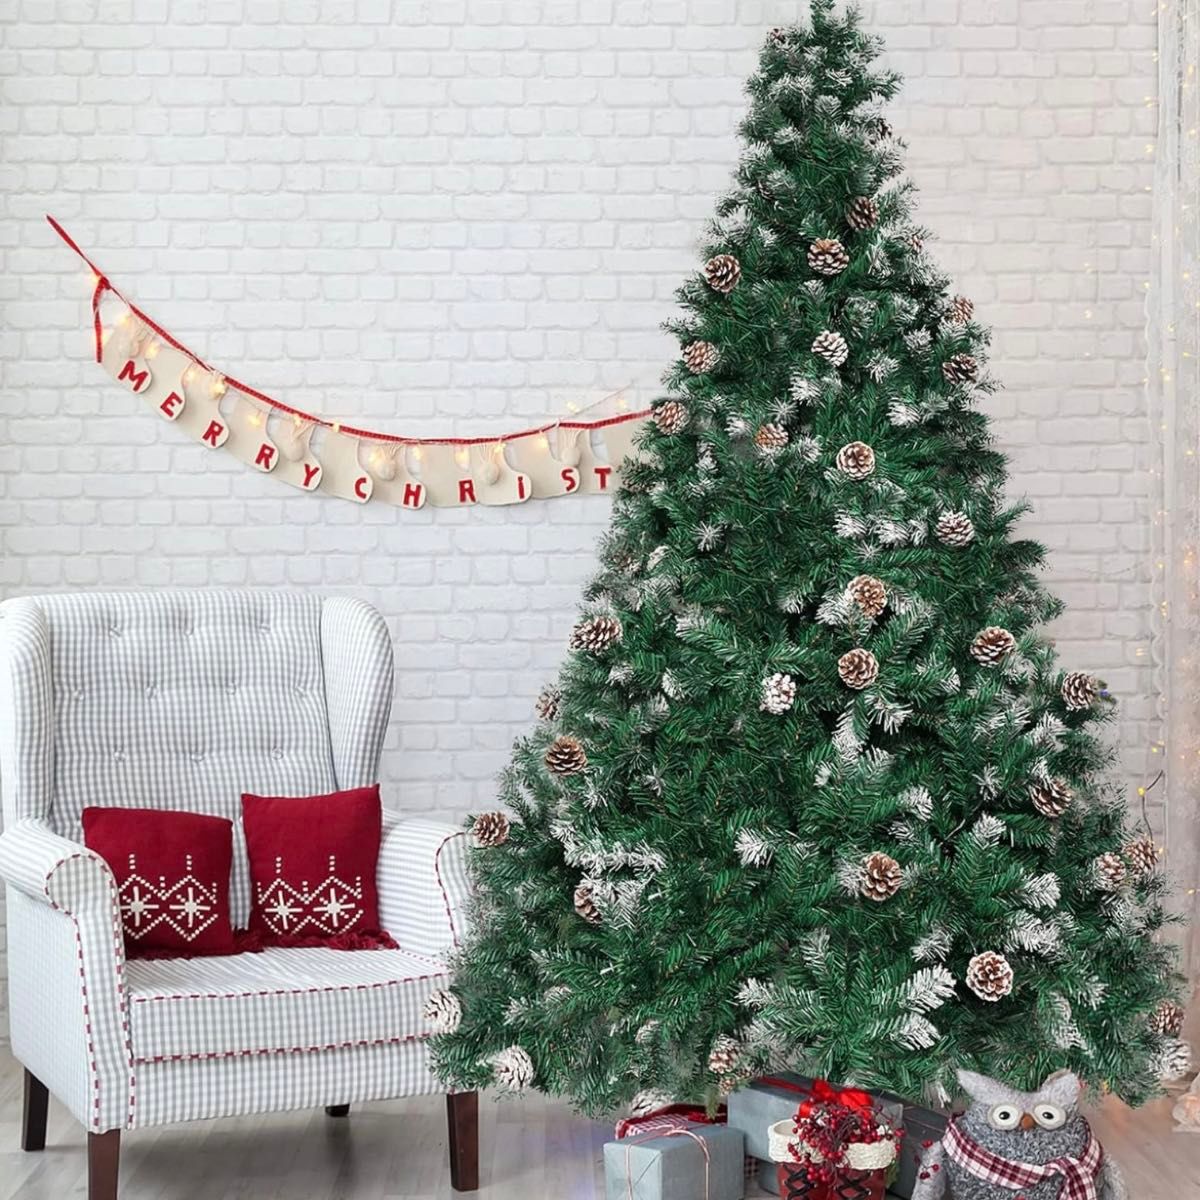 クリスマスツリー 180cm 北欧 組立簡単 収納便利 日本語説明書付き 松ぼっくり スノー まつぼっくり 雪化粧 北欧風